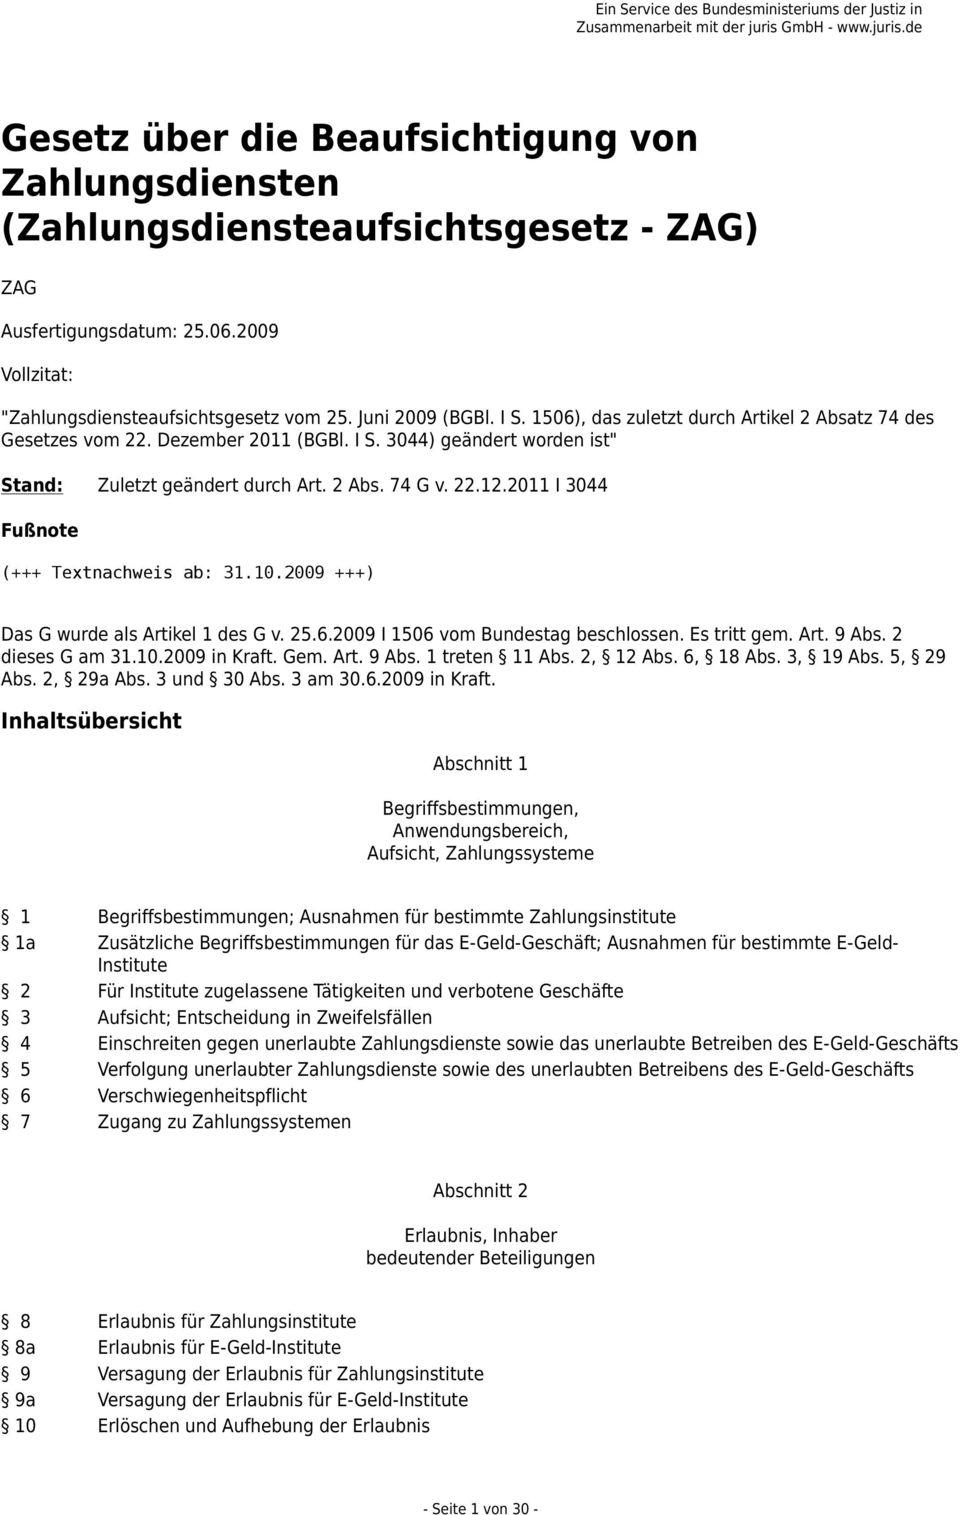 2011 I 3044 Fußnote (+++ Textnachweis ab: 31.10.2009 +++) Das G wurde als Artikel 1 des G v. 25.6.2009 I 1506 vom Bundestag beschlossen. Es tritt gem. Art. 9 Abs. 2 dieses G am 31.10.2009 in Kraft.